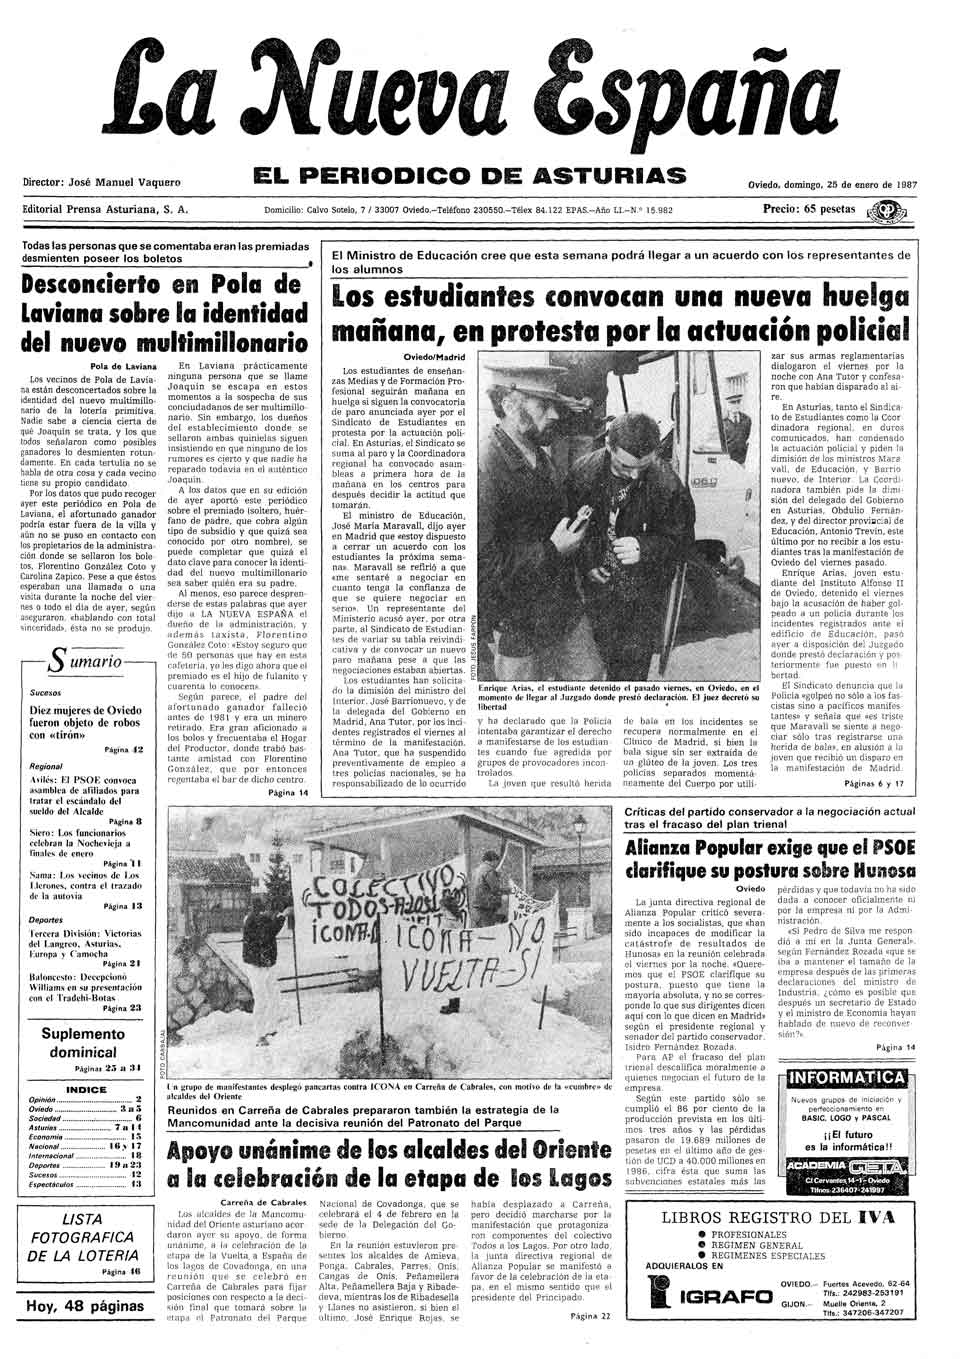 Portada del Domingo, 25 de Enero de 1987